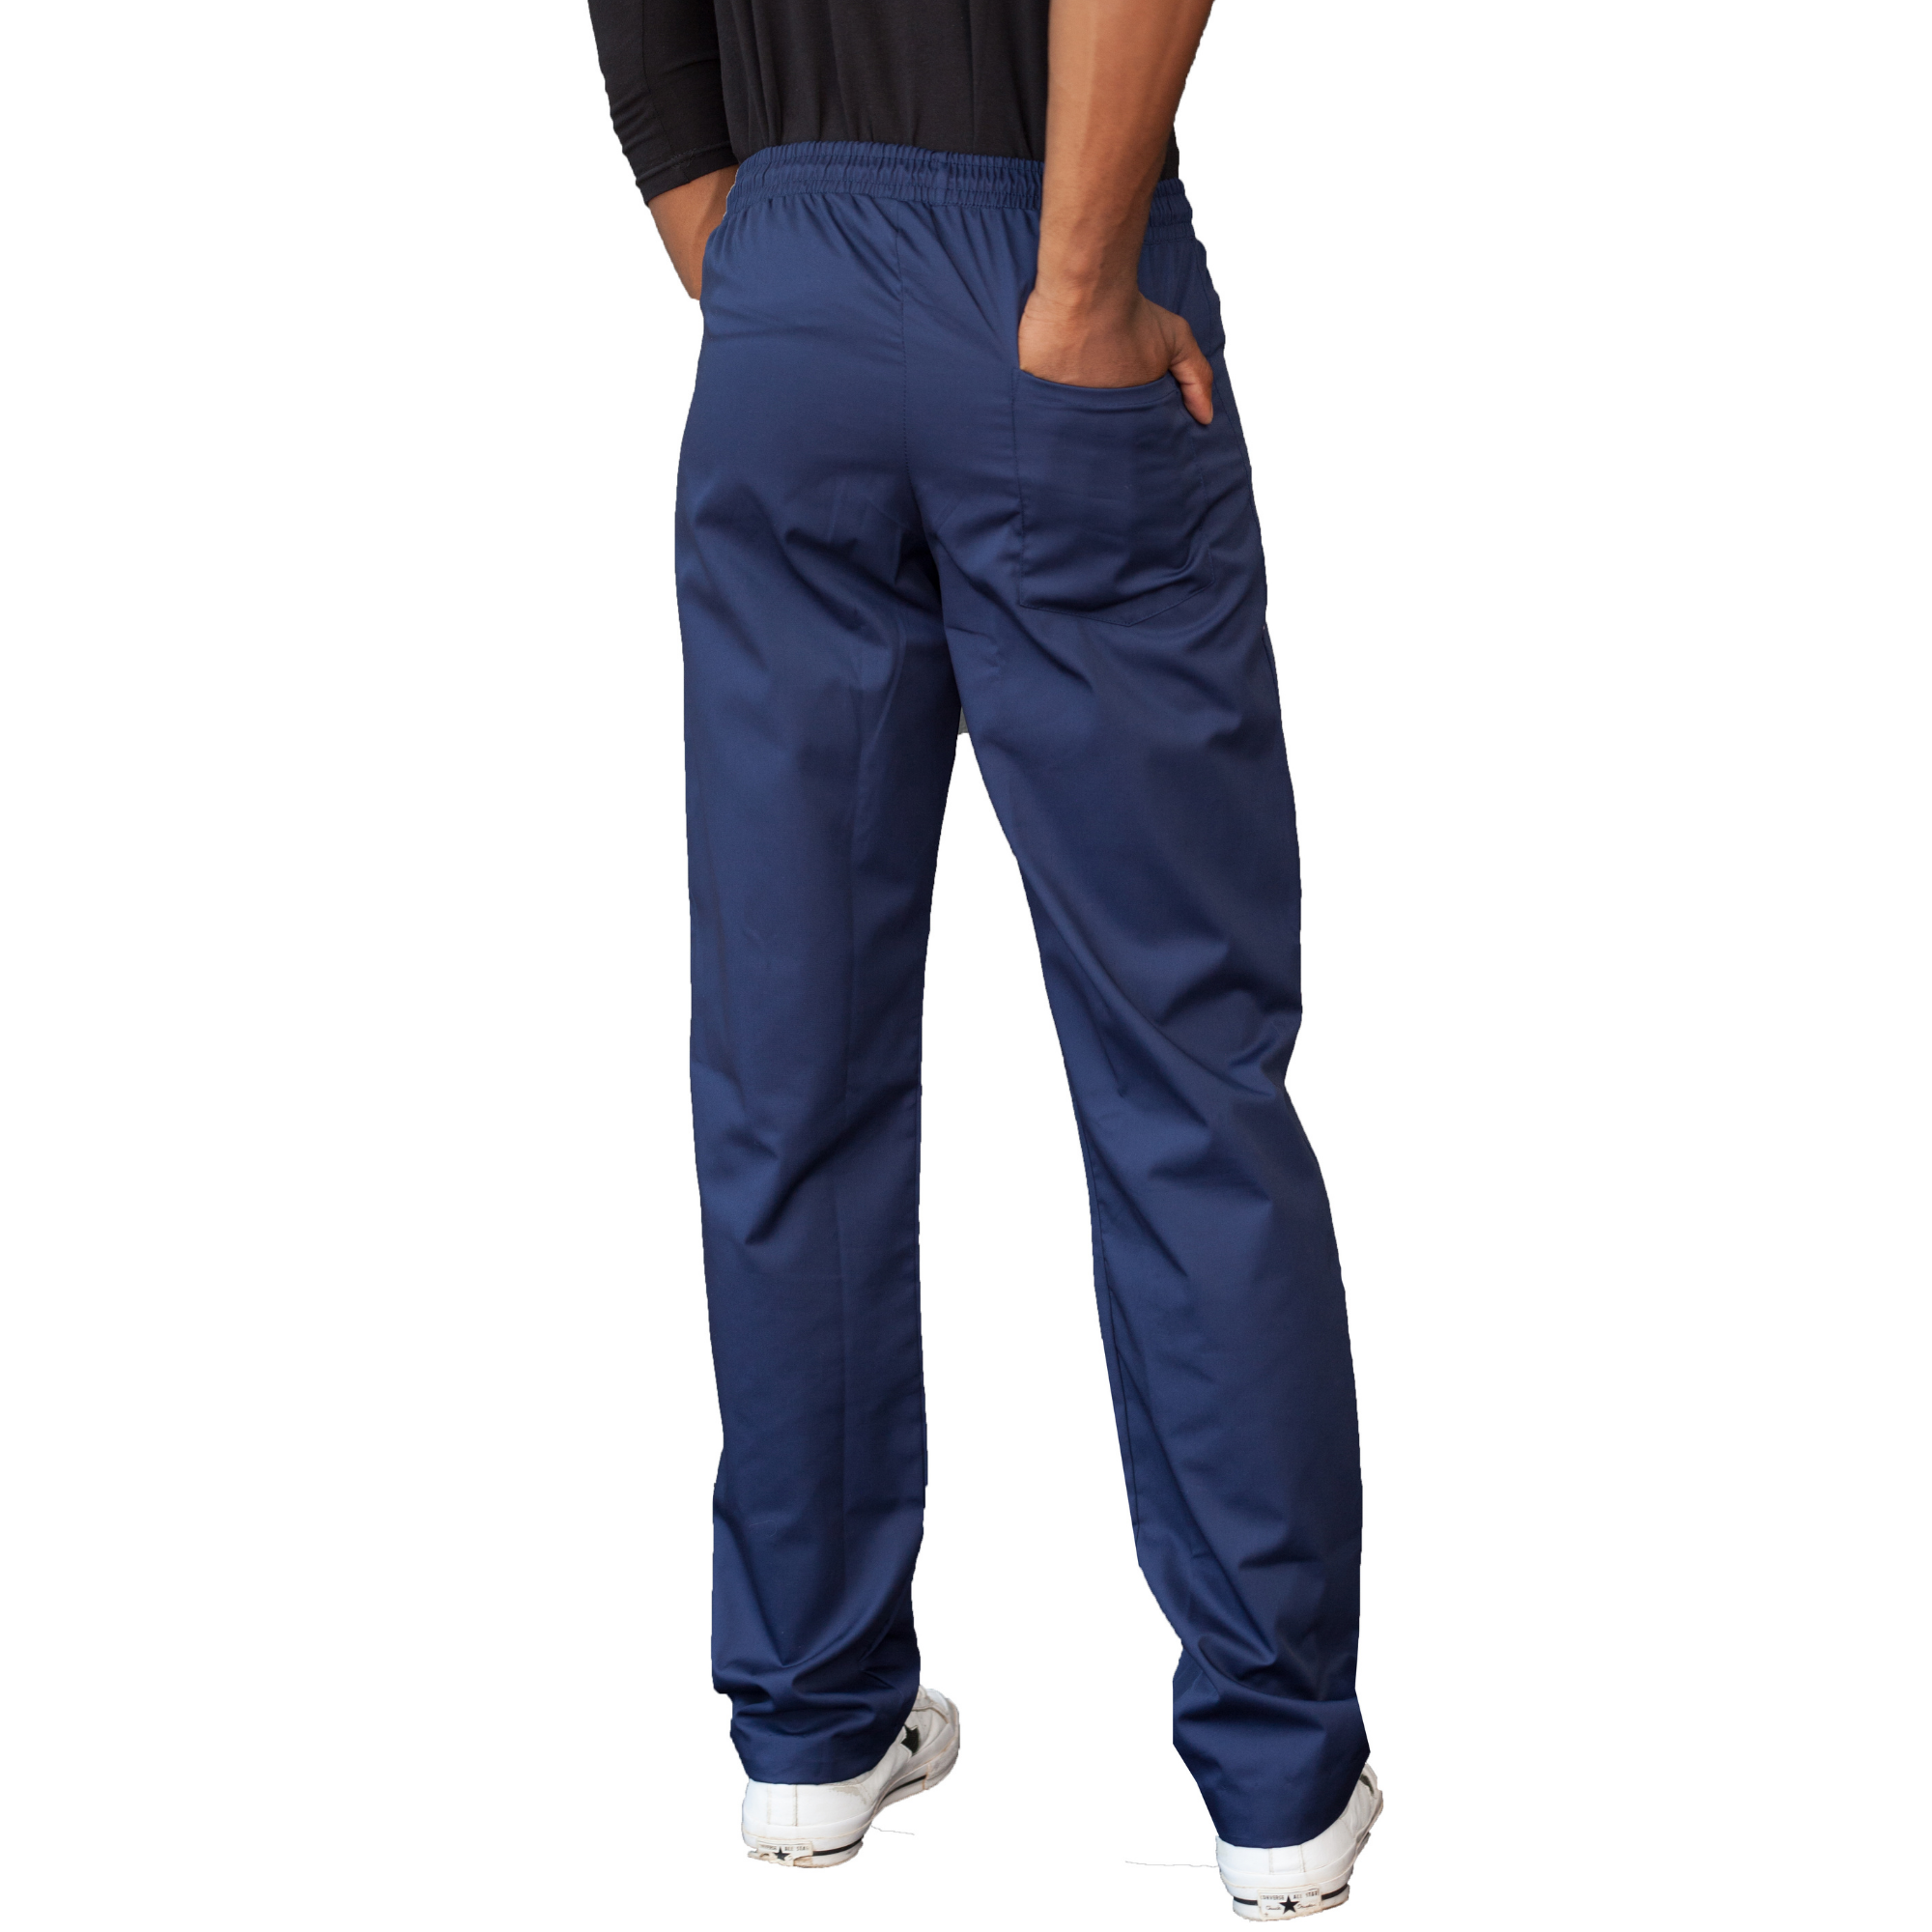 ECG Clinical Wear - Firebird Lite Trousers